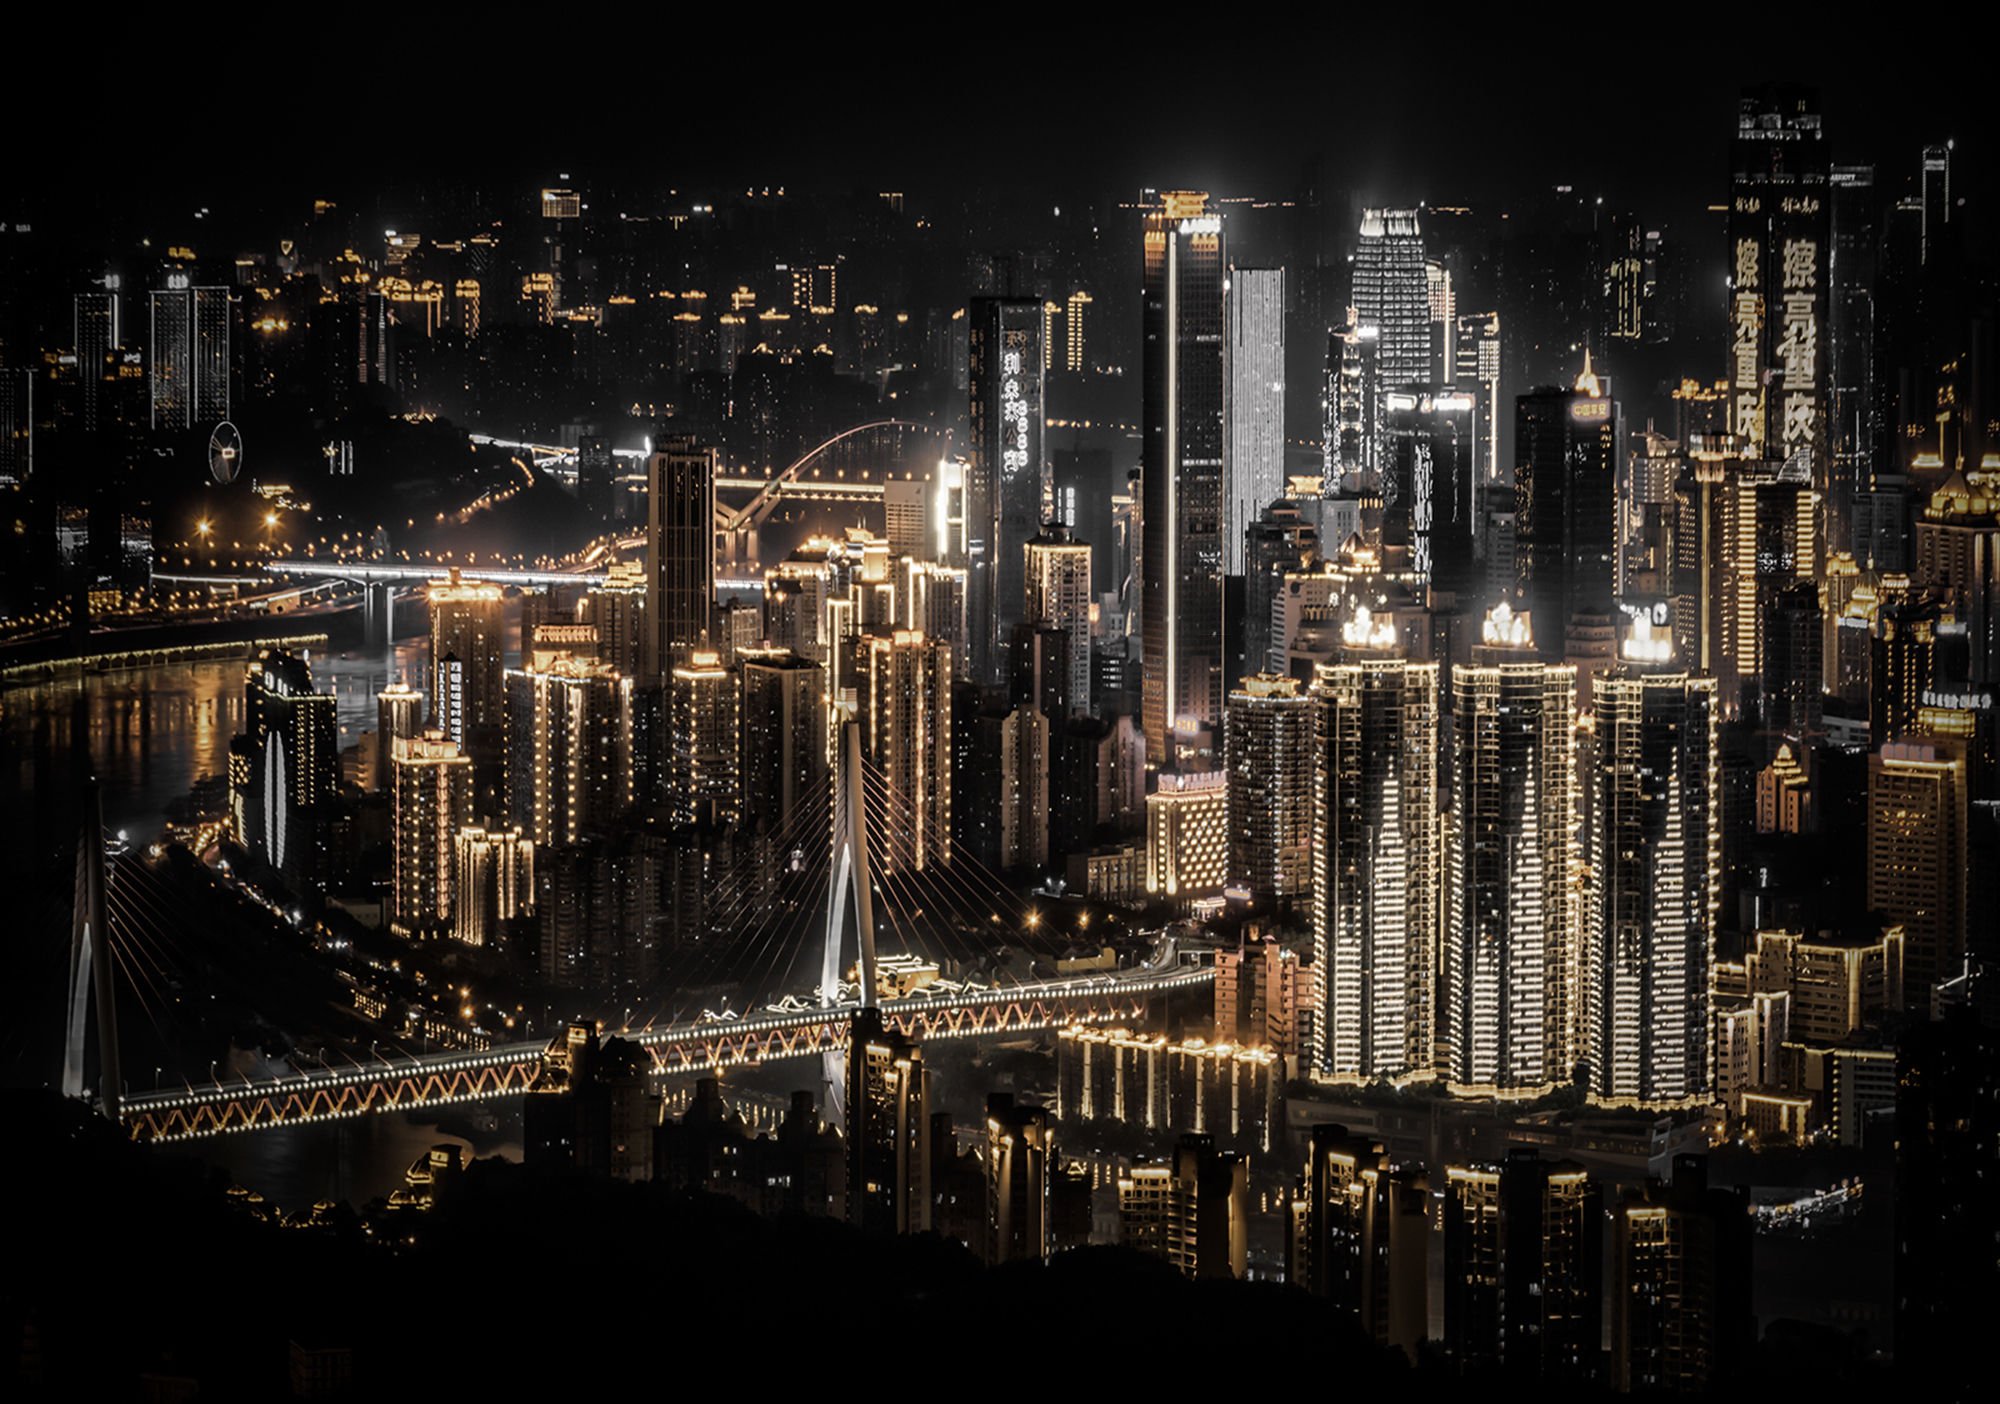 Foto tapeta: Noćni grad (5) - 184x254 cm